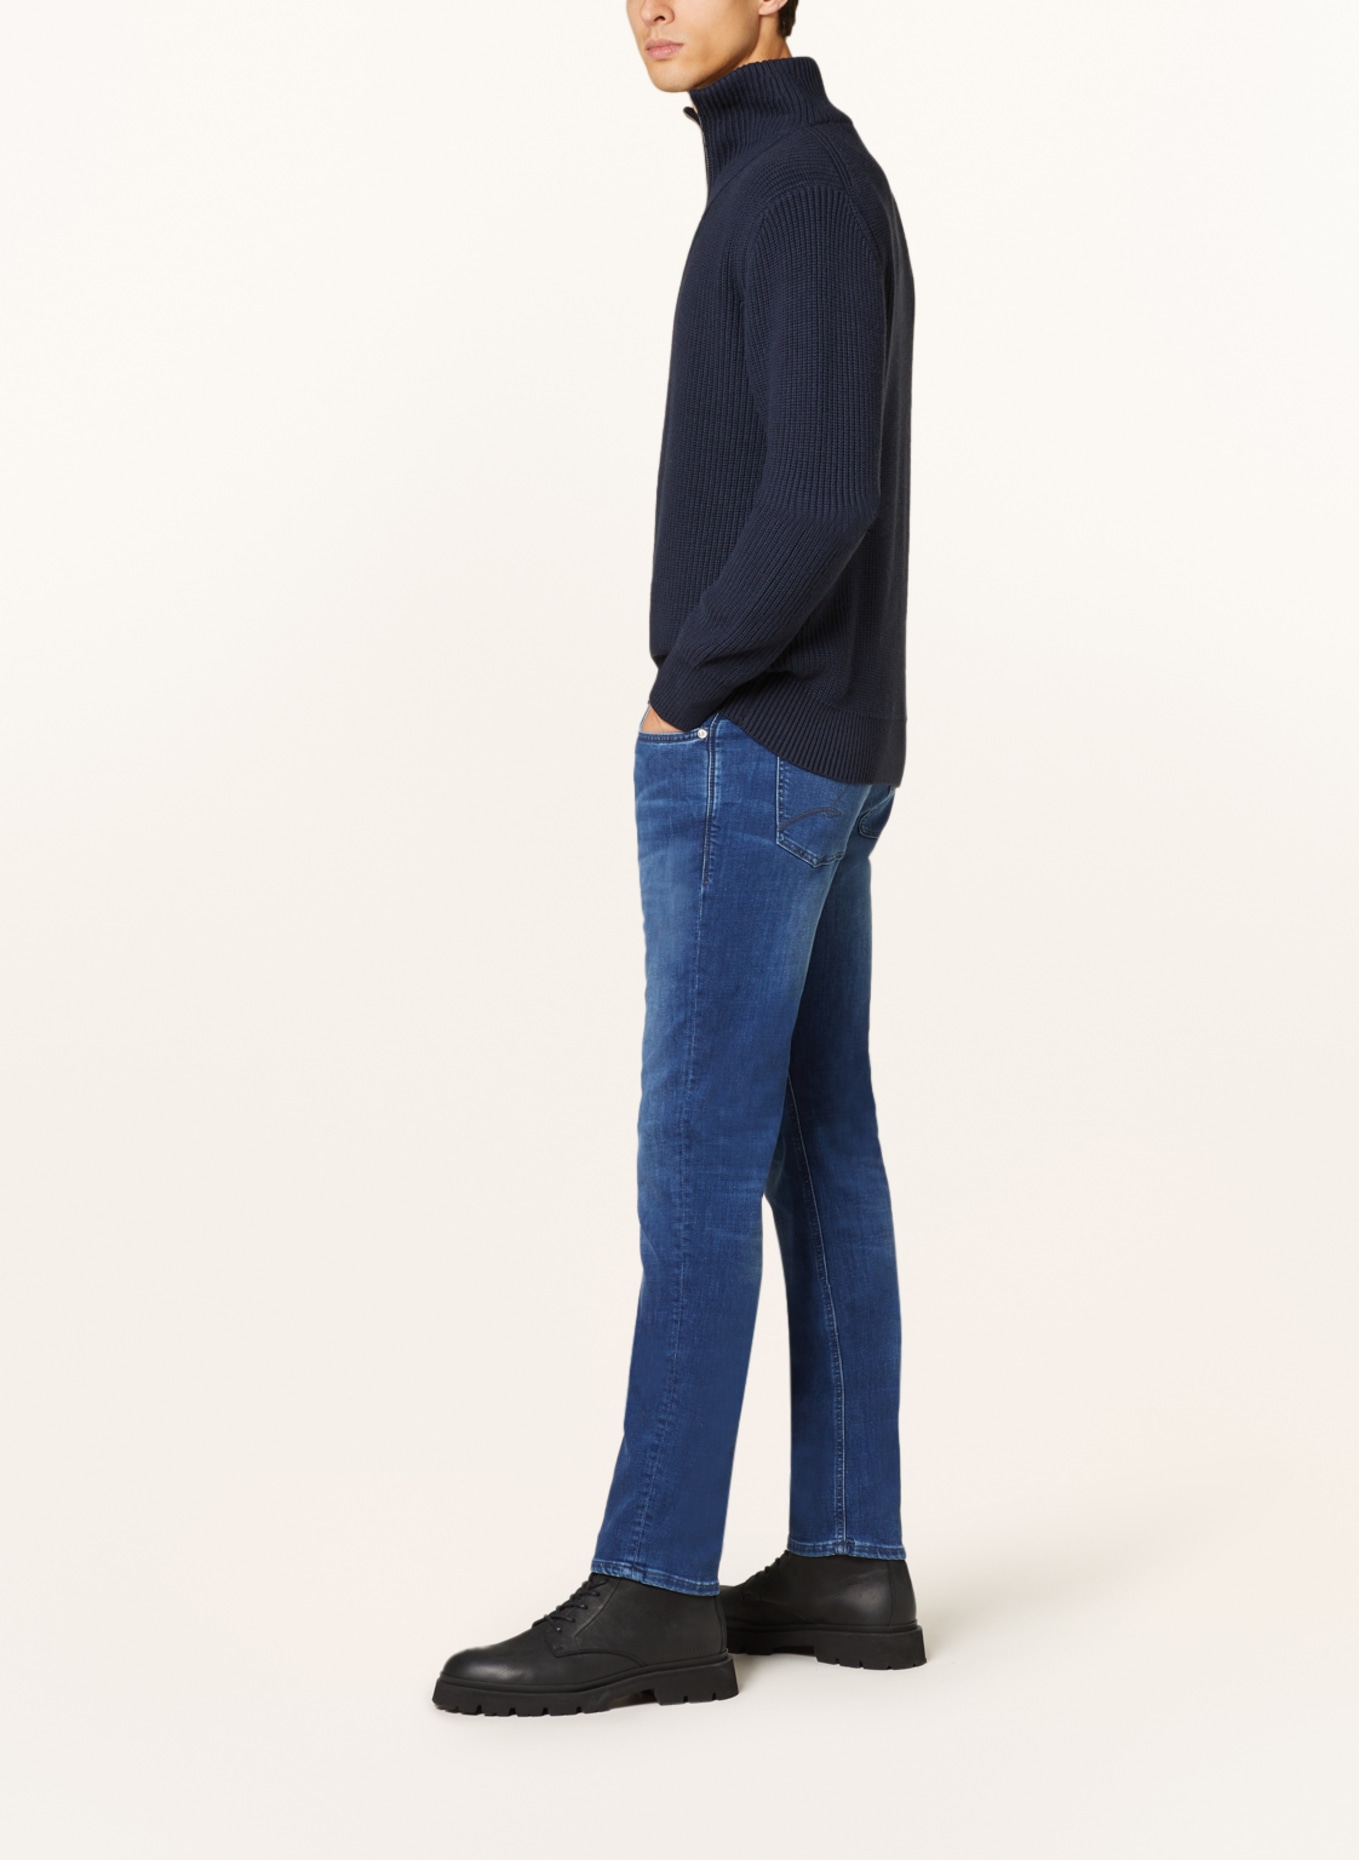 BALDESSARINI Jeans regular fit, Color: 6825 blue used whisker (Image 4)